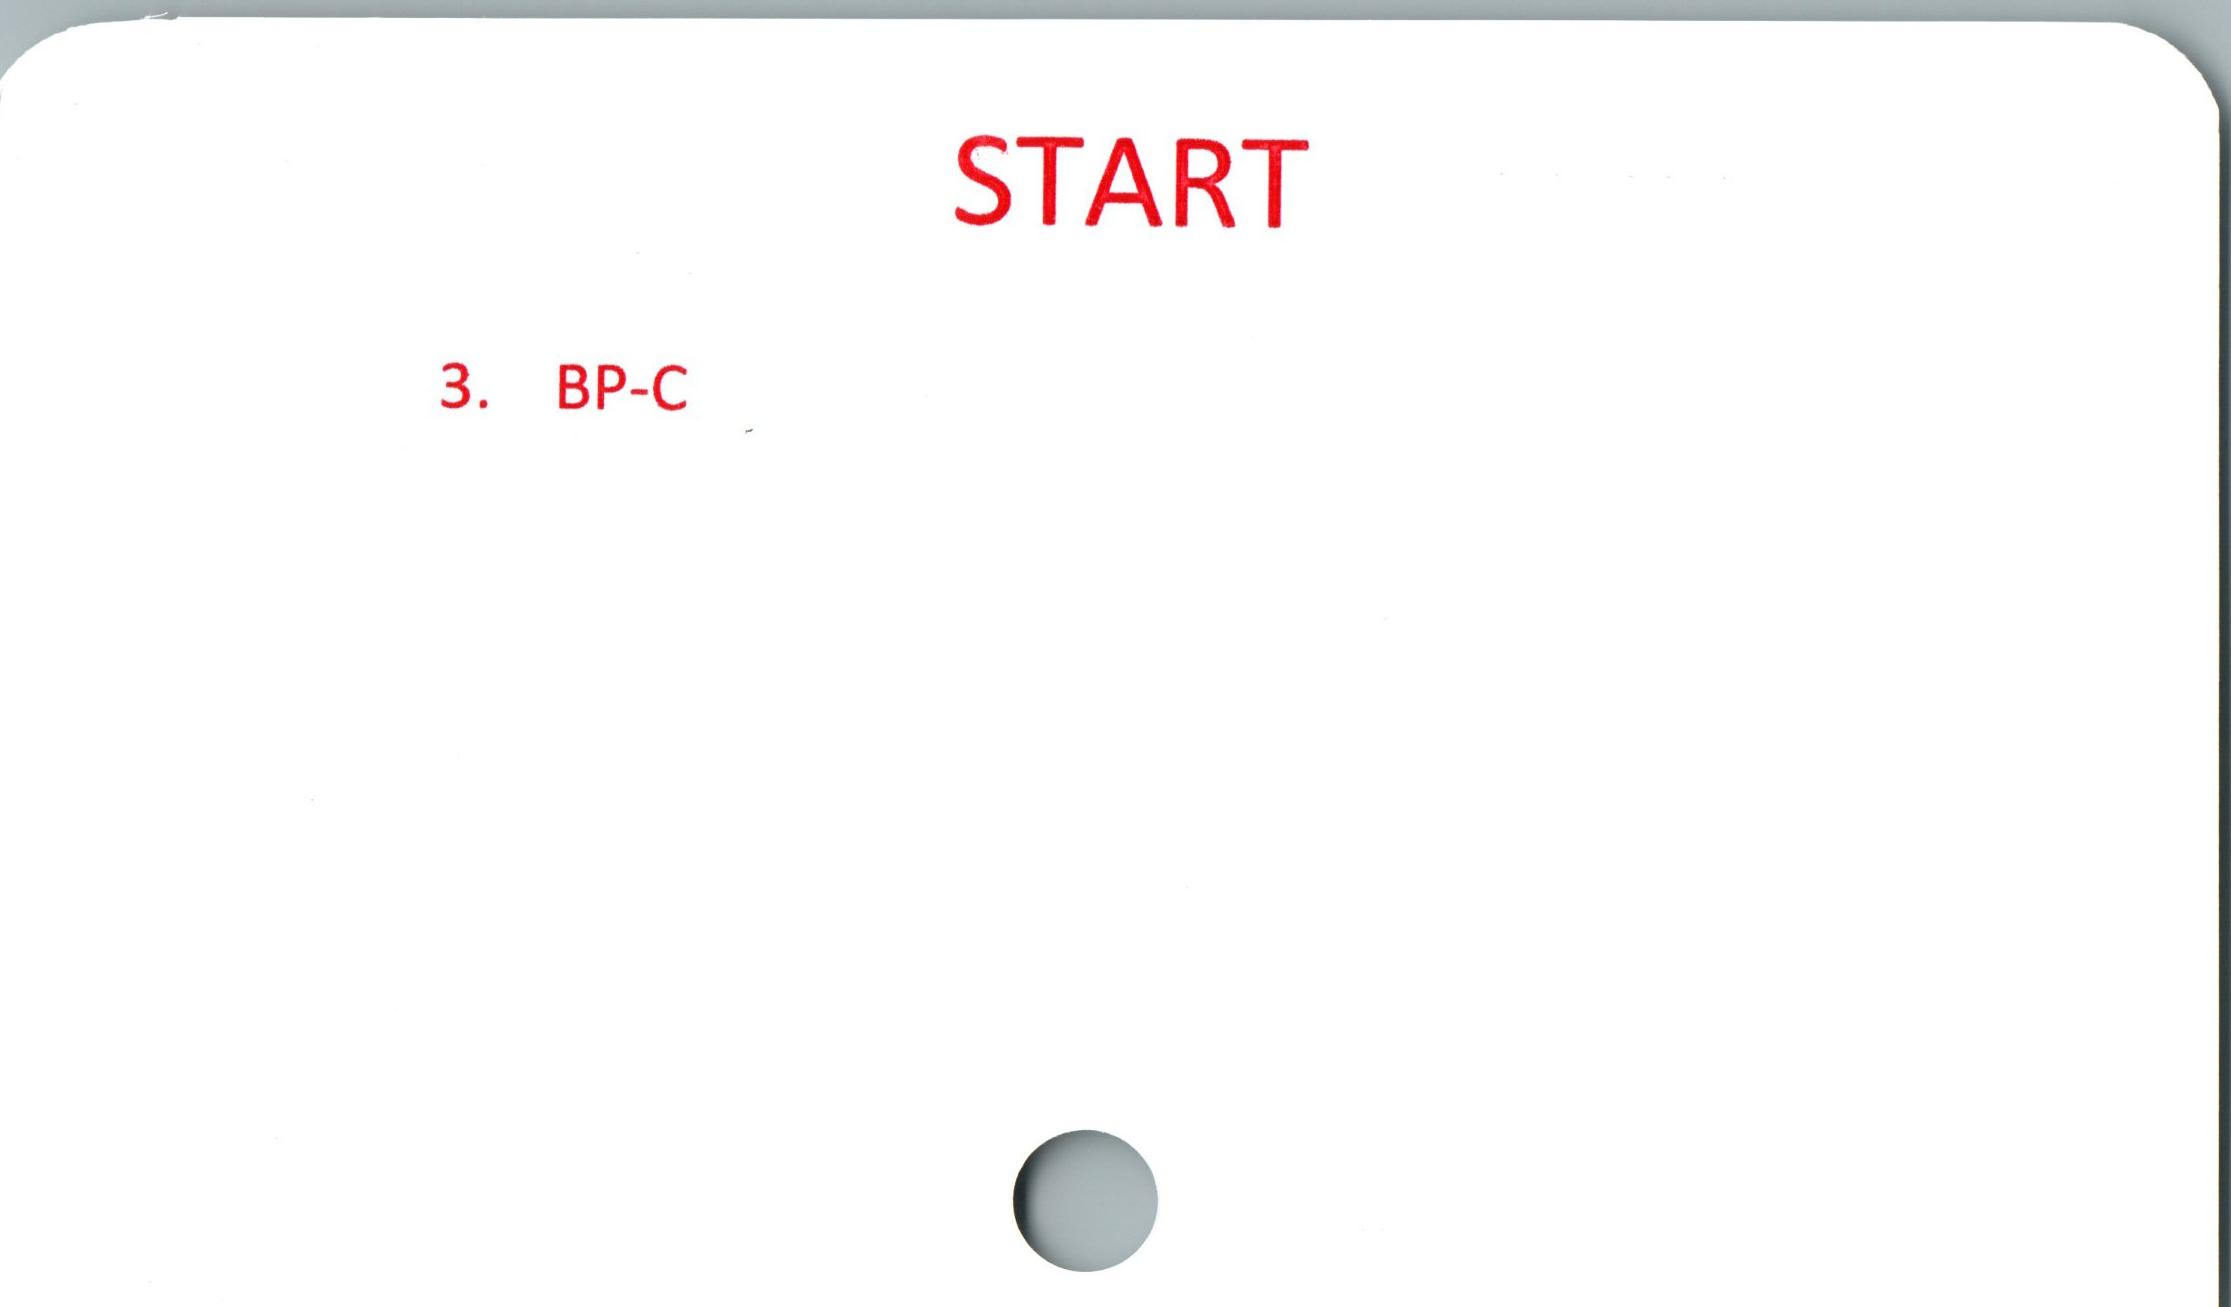 START ﻿3. BP-C

START